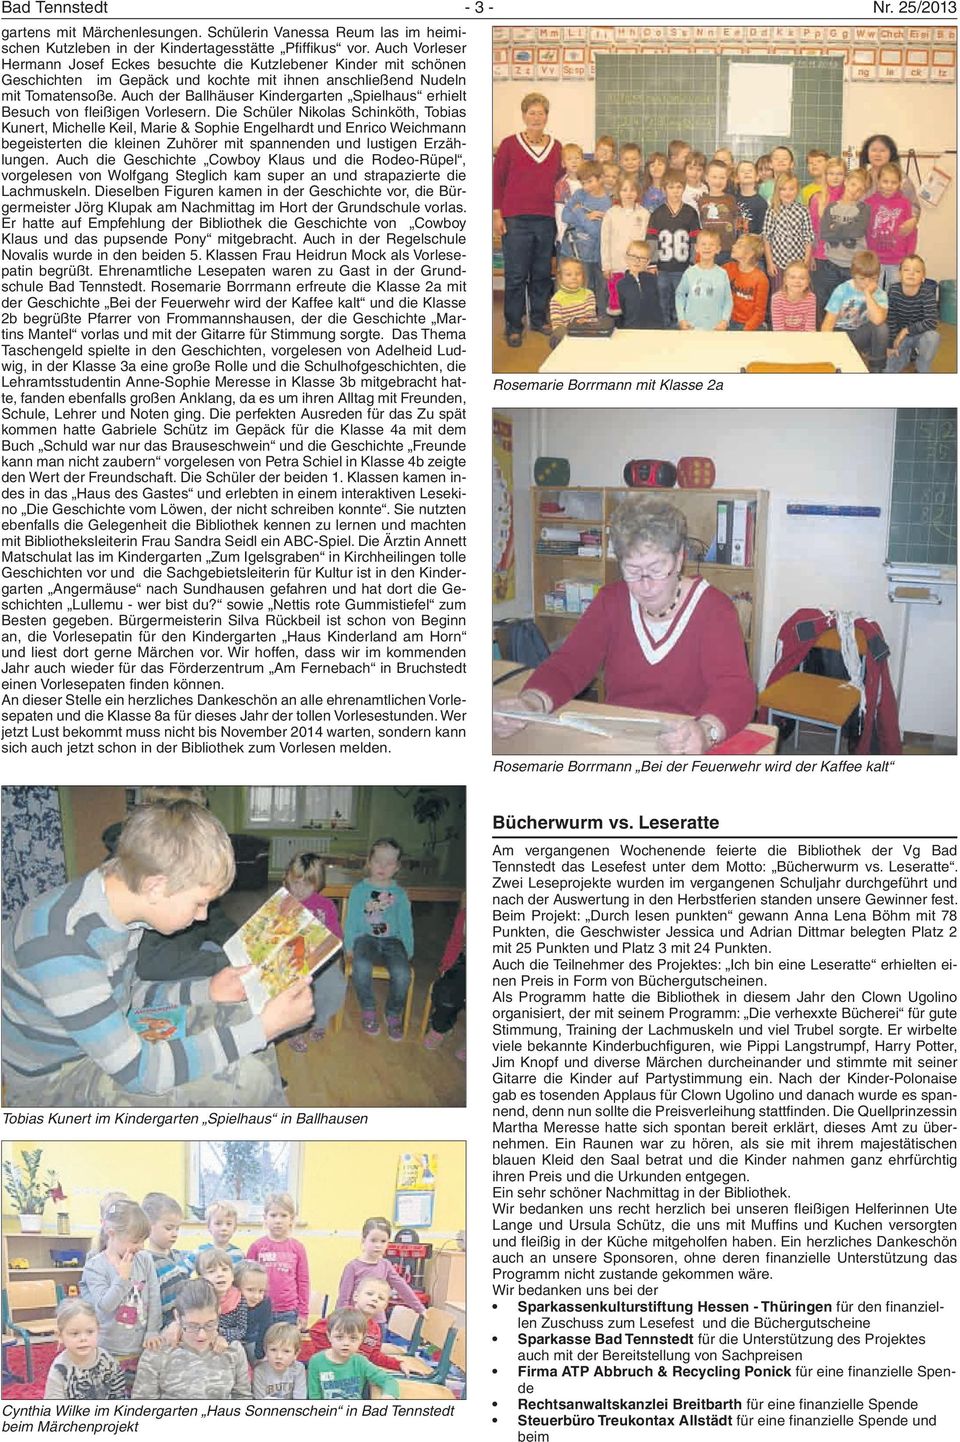 Auch der Ballhäuser Kindergarten Spielhaus erhielt Besuch von fleißigen Vorlesern.